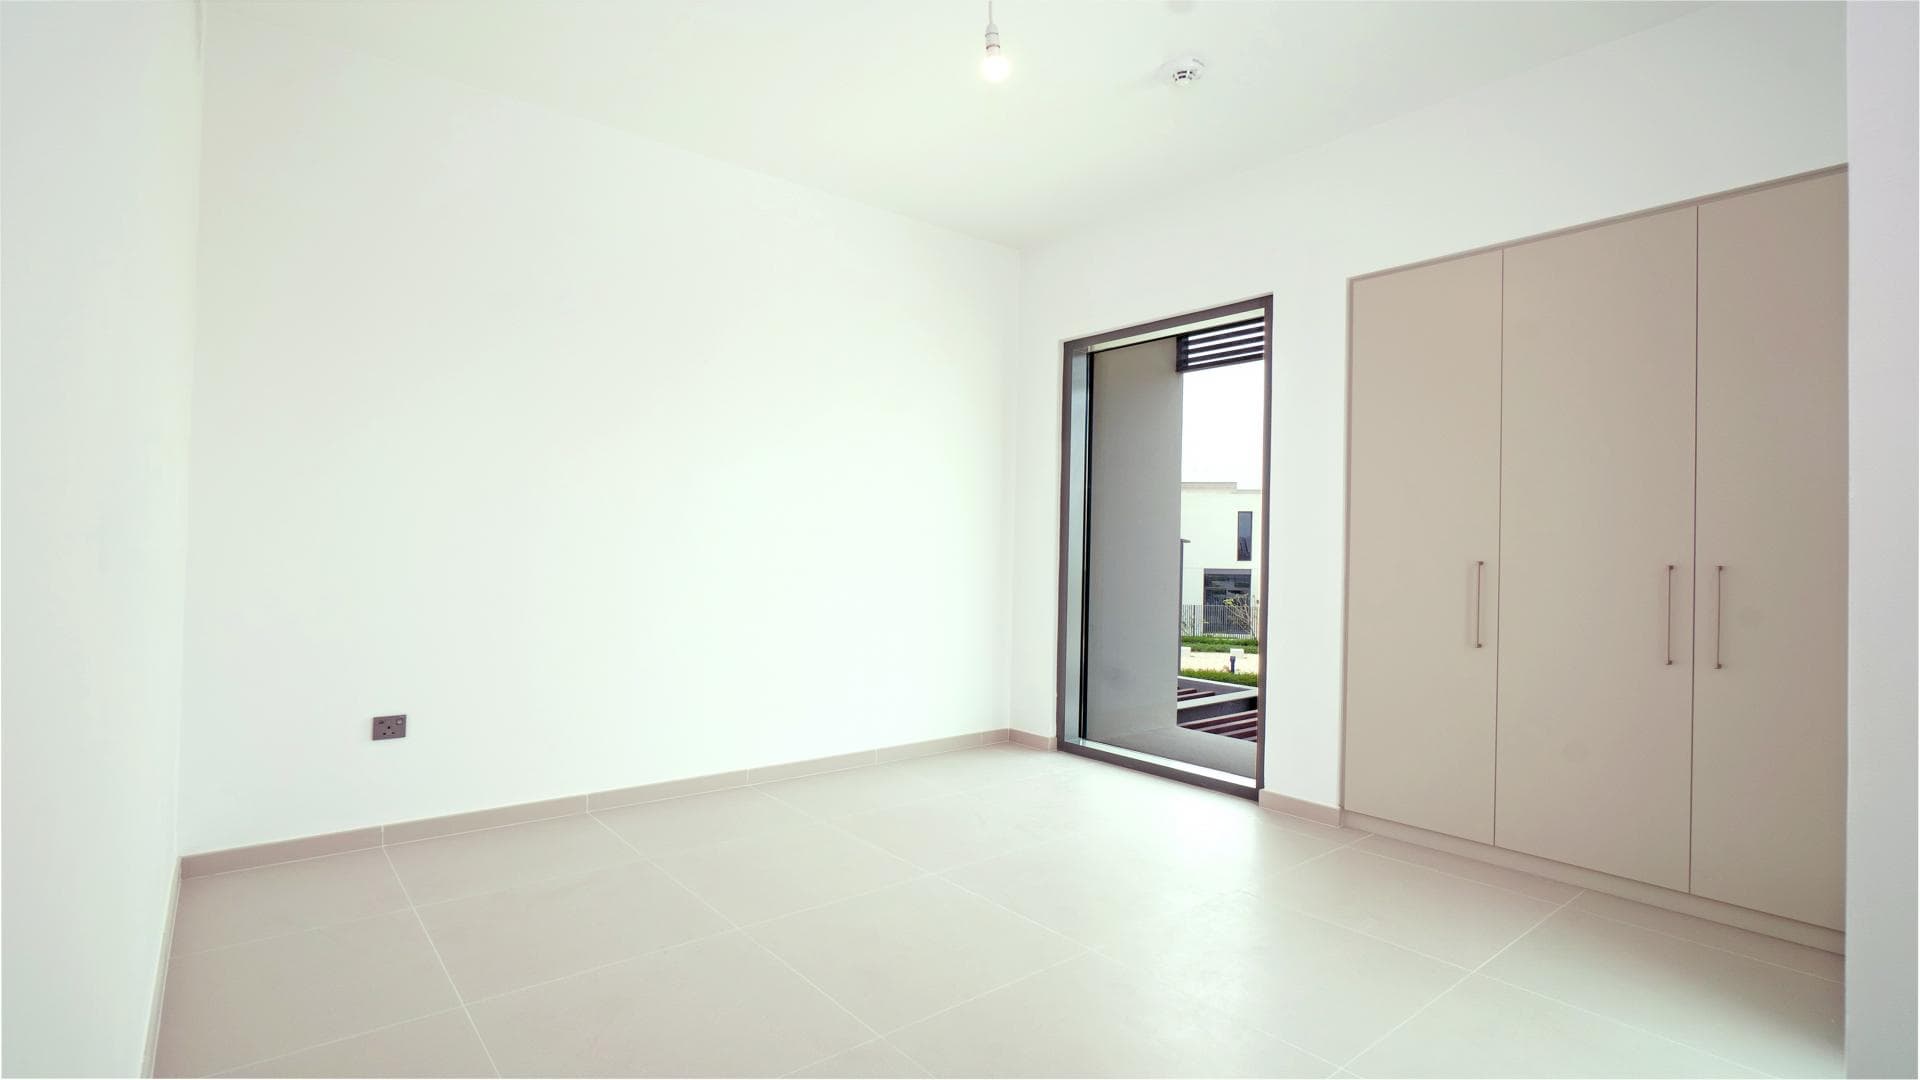 4 Bedroom Villa For Rent Warda Apartments 1b Lp36729 1f1a97536bf76600.jpg